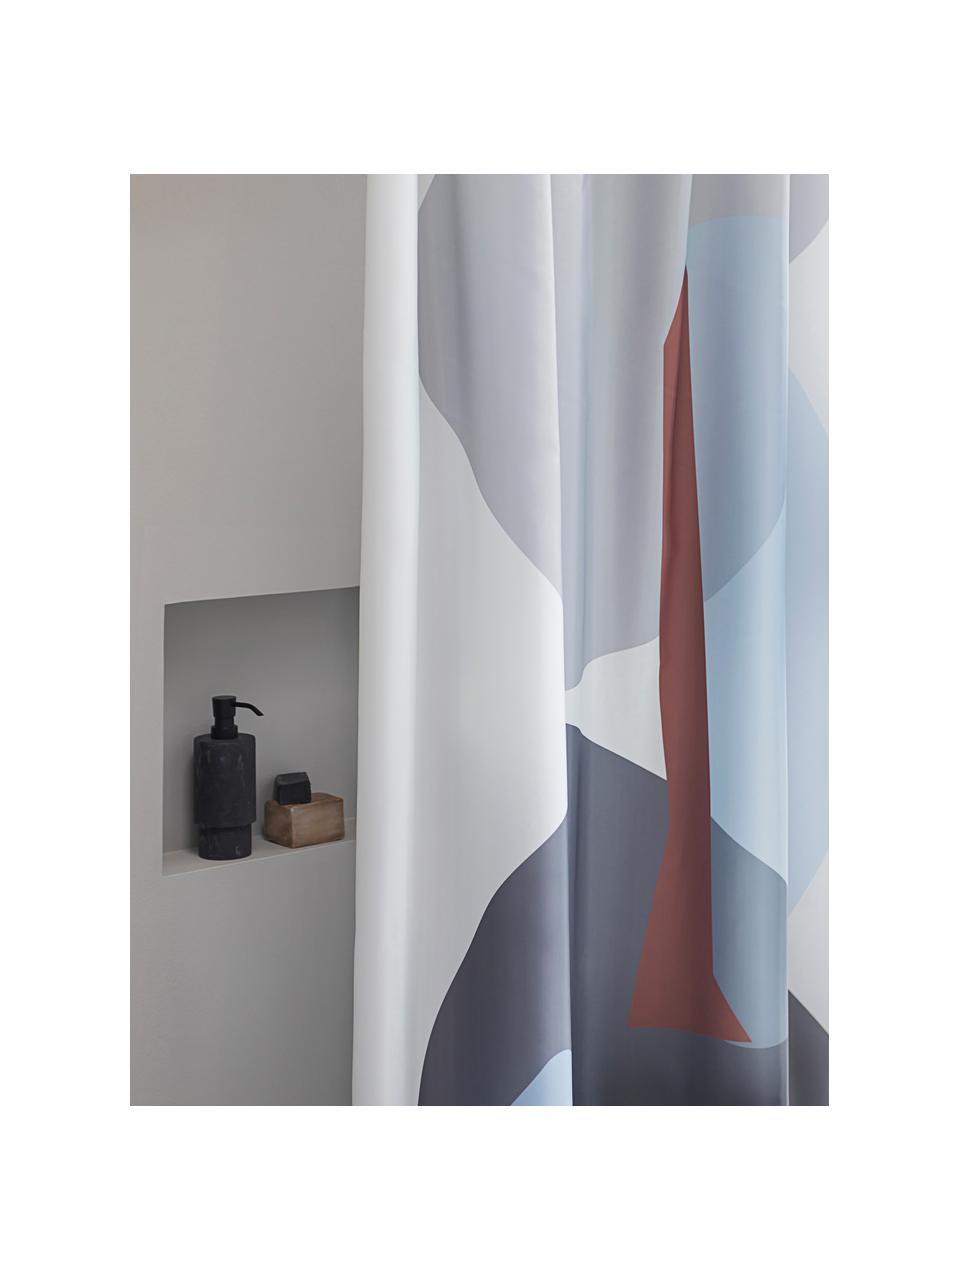 Douchegordijn Gallery met abstract patroon, Polyester, Grijs, blauw, bruin, B 150 x L 200 cm